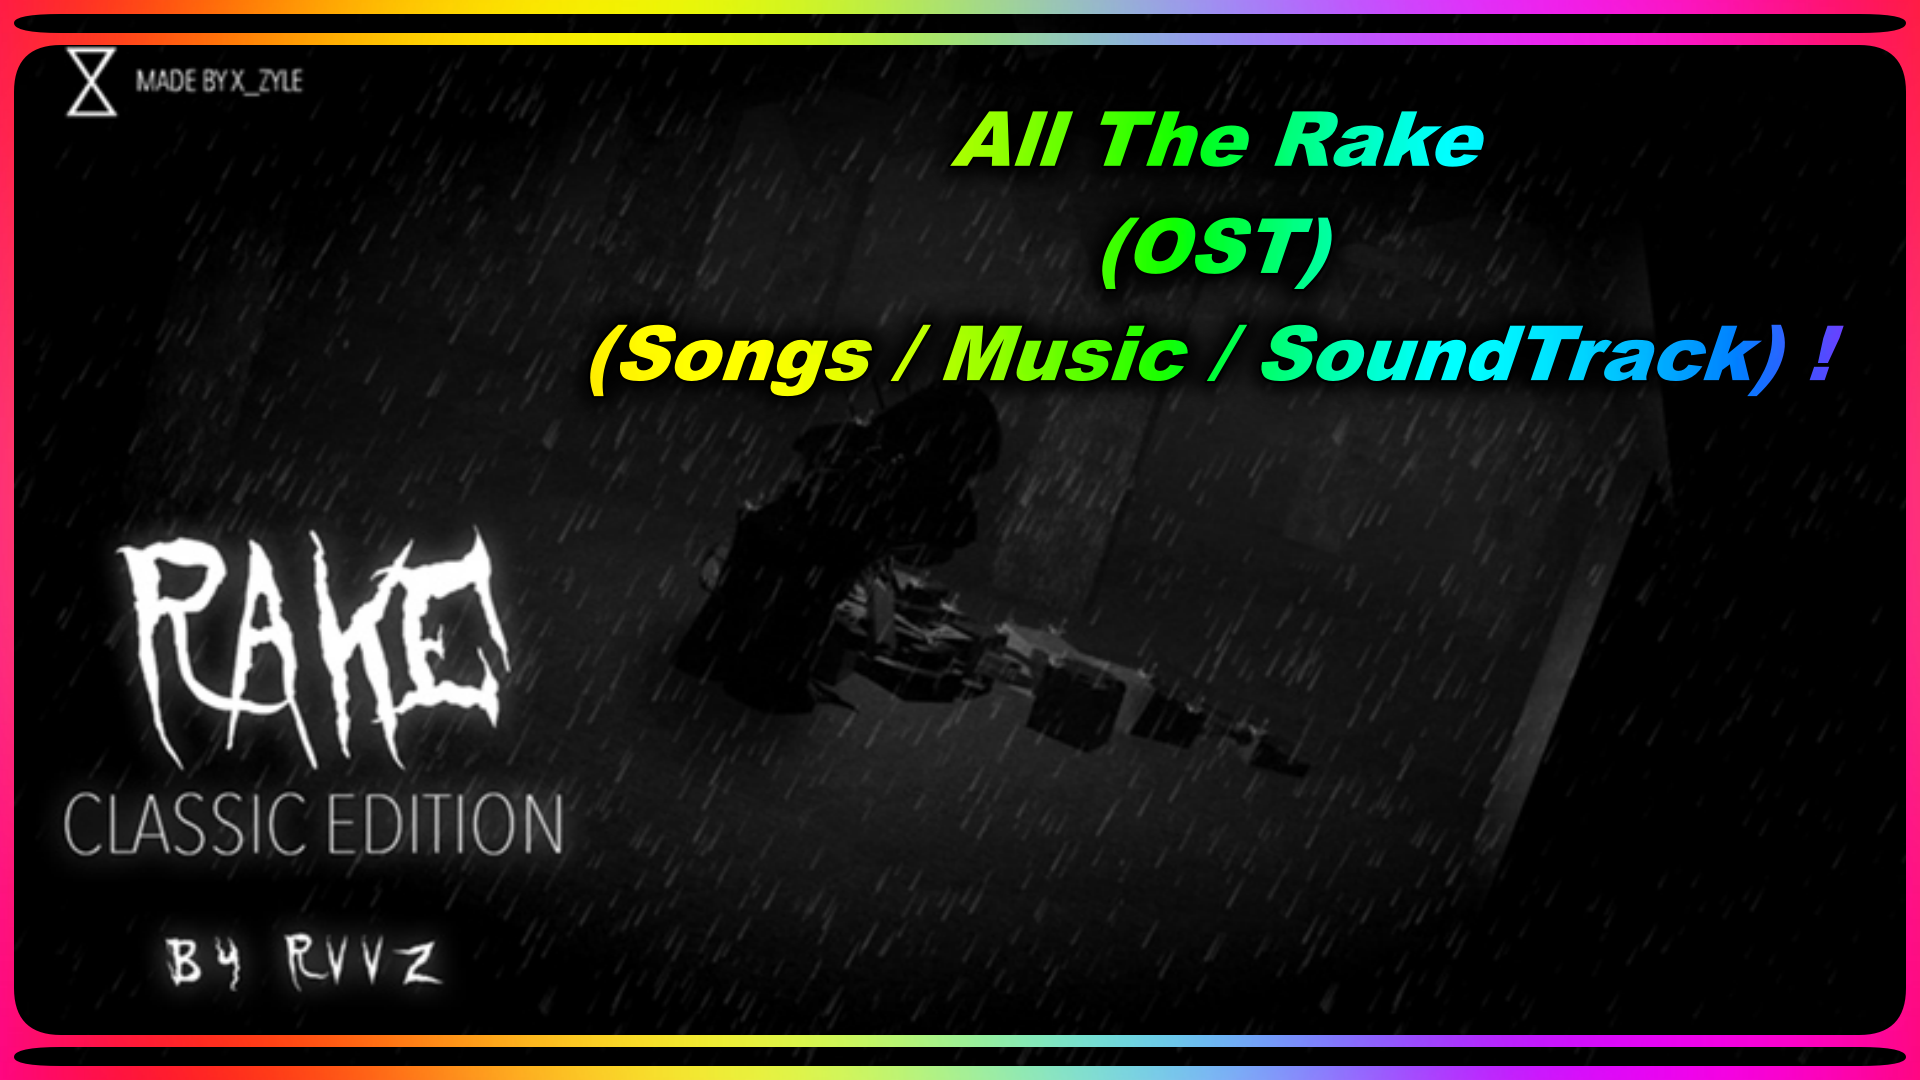 Gunasamssyt Fortnite Leaks News On Twitter All The Rake Ost Songs Music Soundtrack Https T Co Lcaf0ct2vl Via Youtube Zrvvz Roblox Therake Roblox Music Https T Co Qgyihrrh1y - all the the rake roblox